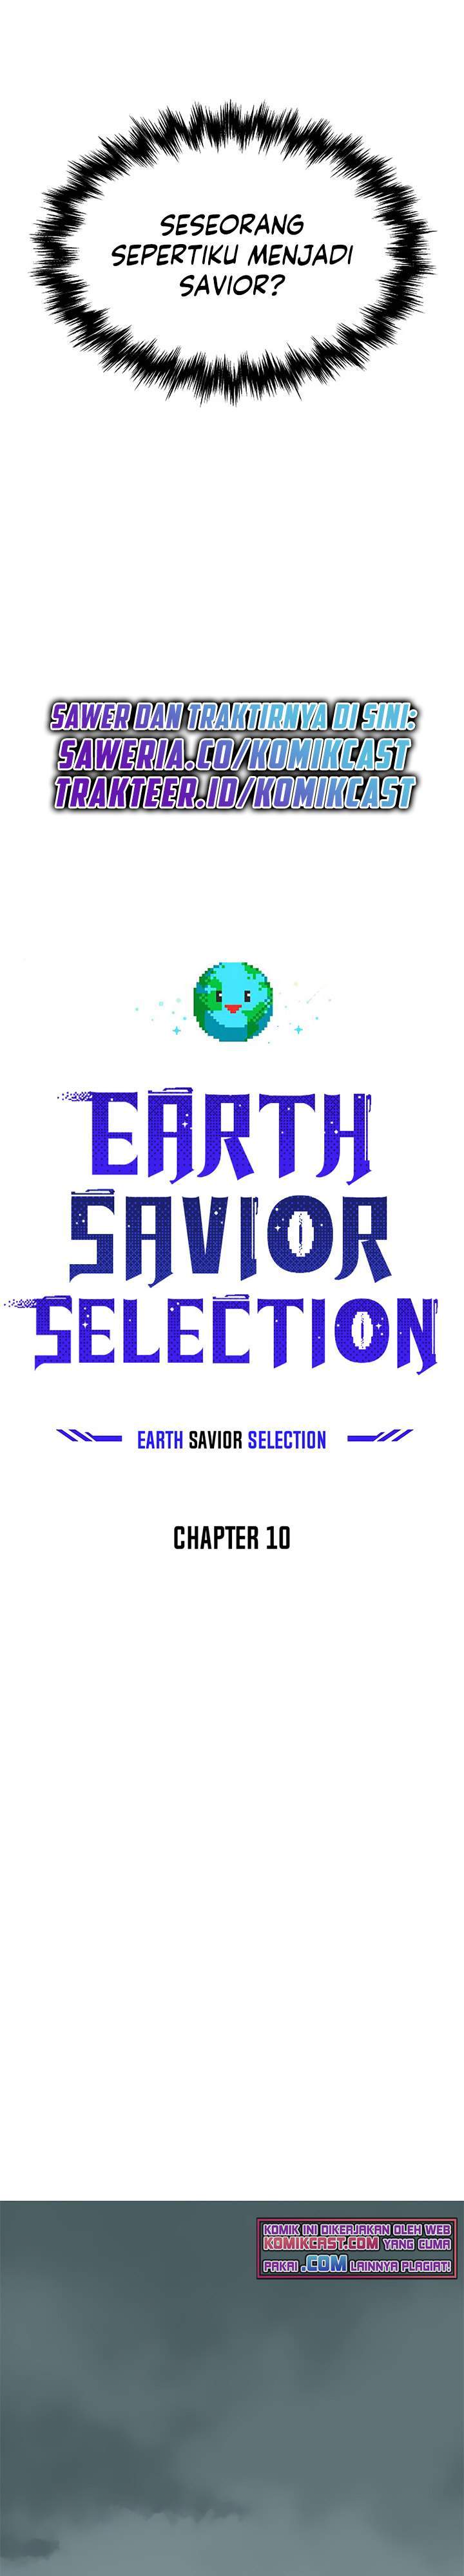 The Earth Savior Selection Chapter 10 - 265